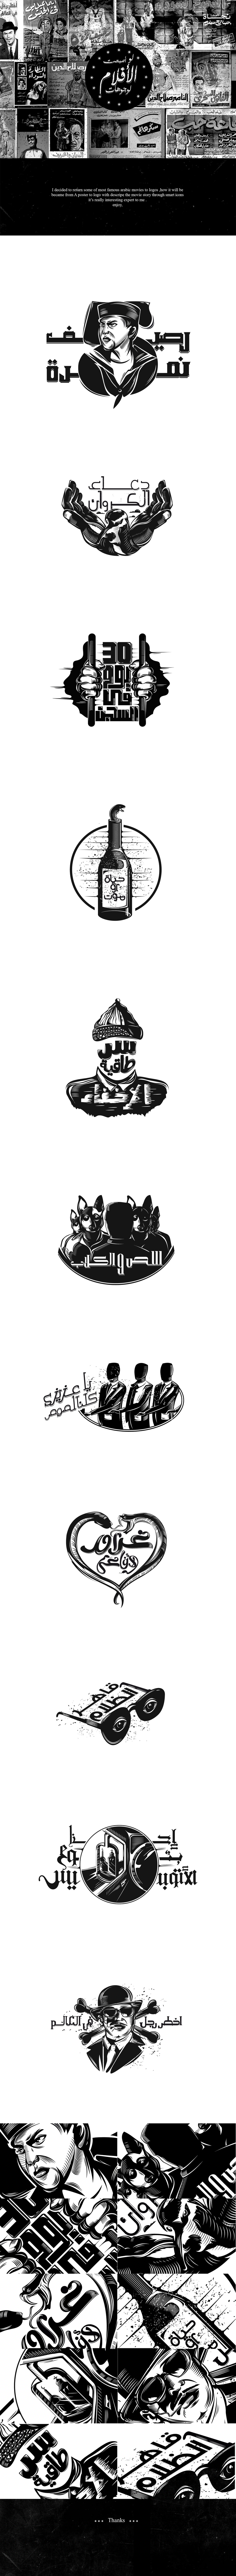 Movies arabic logo black White poster Icon design egypt vintage